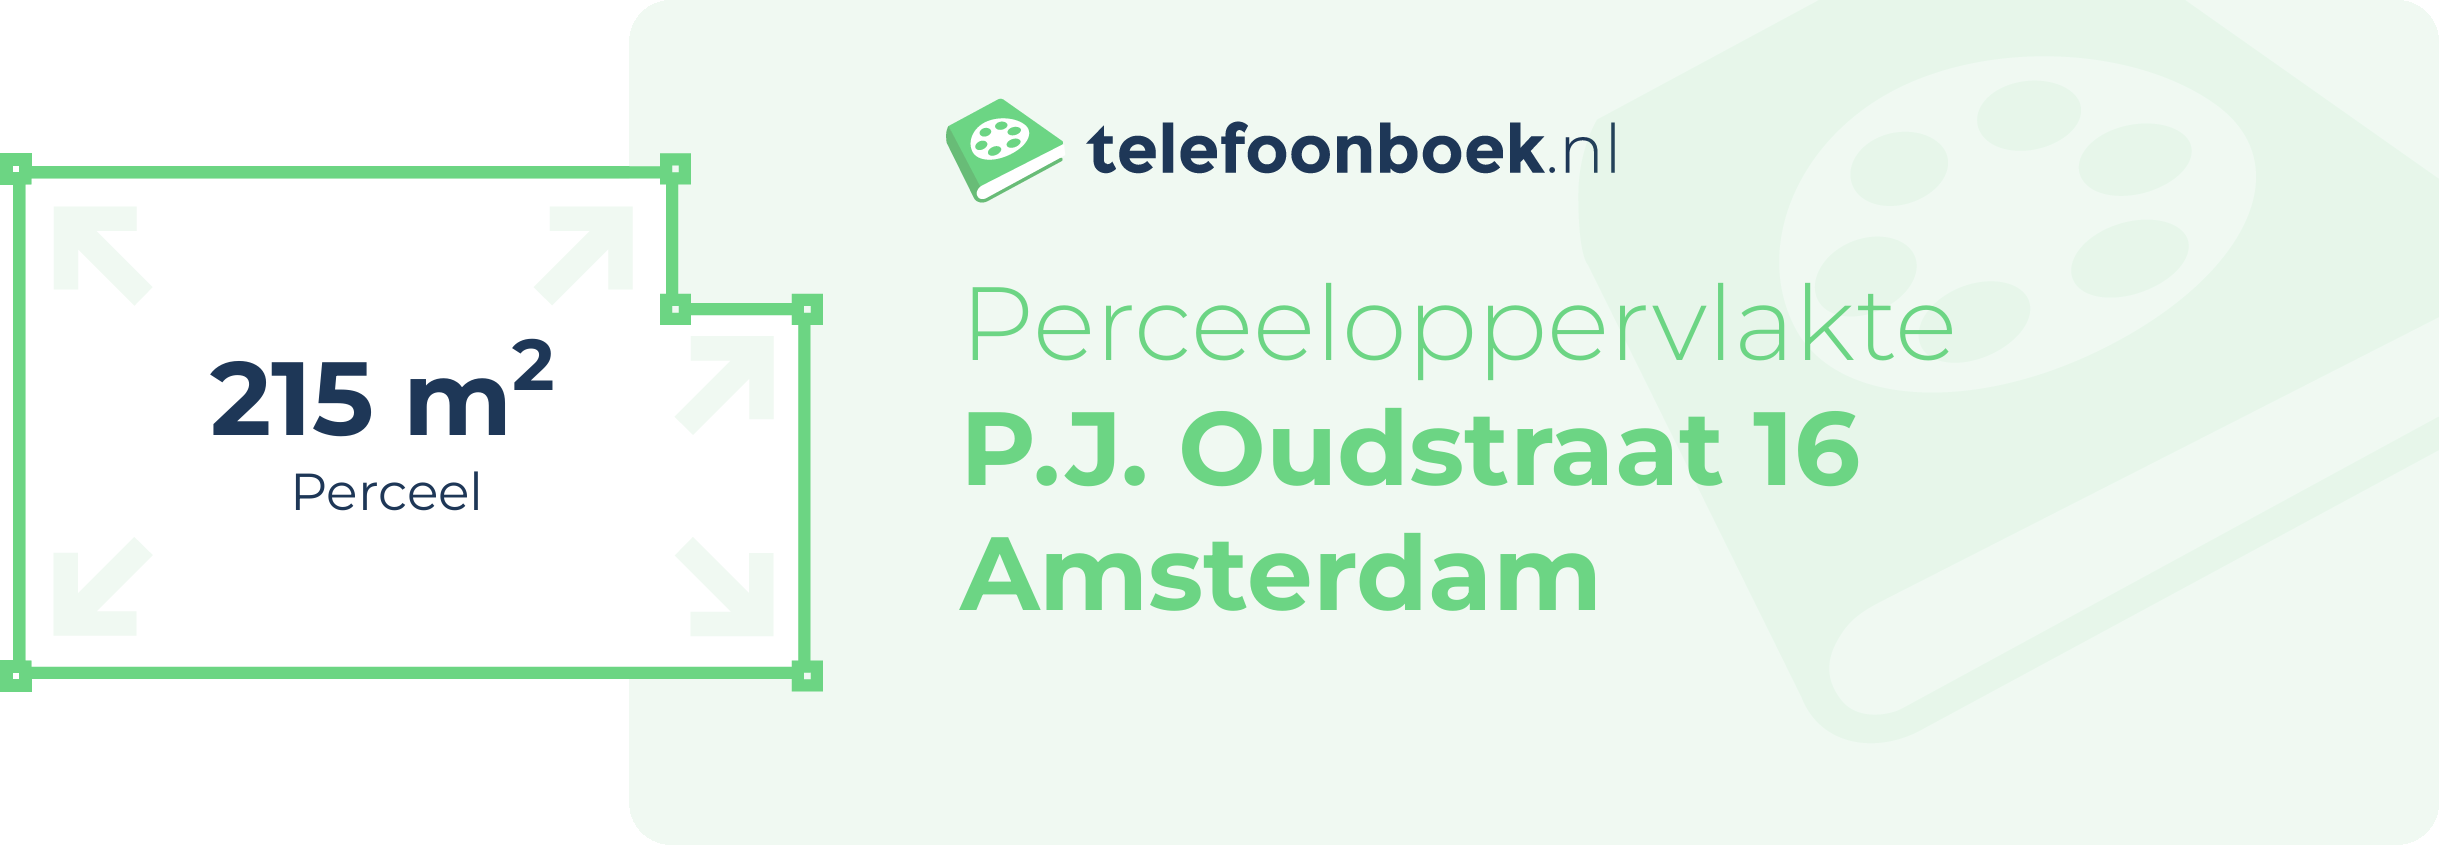 Perceeloppervlakte P.J. Oudstraat 16 Amsterdam